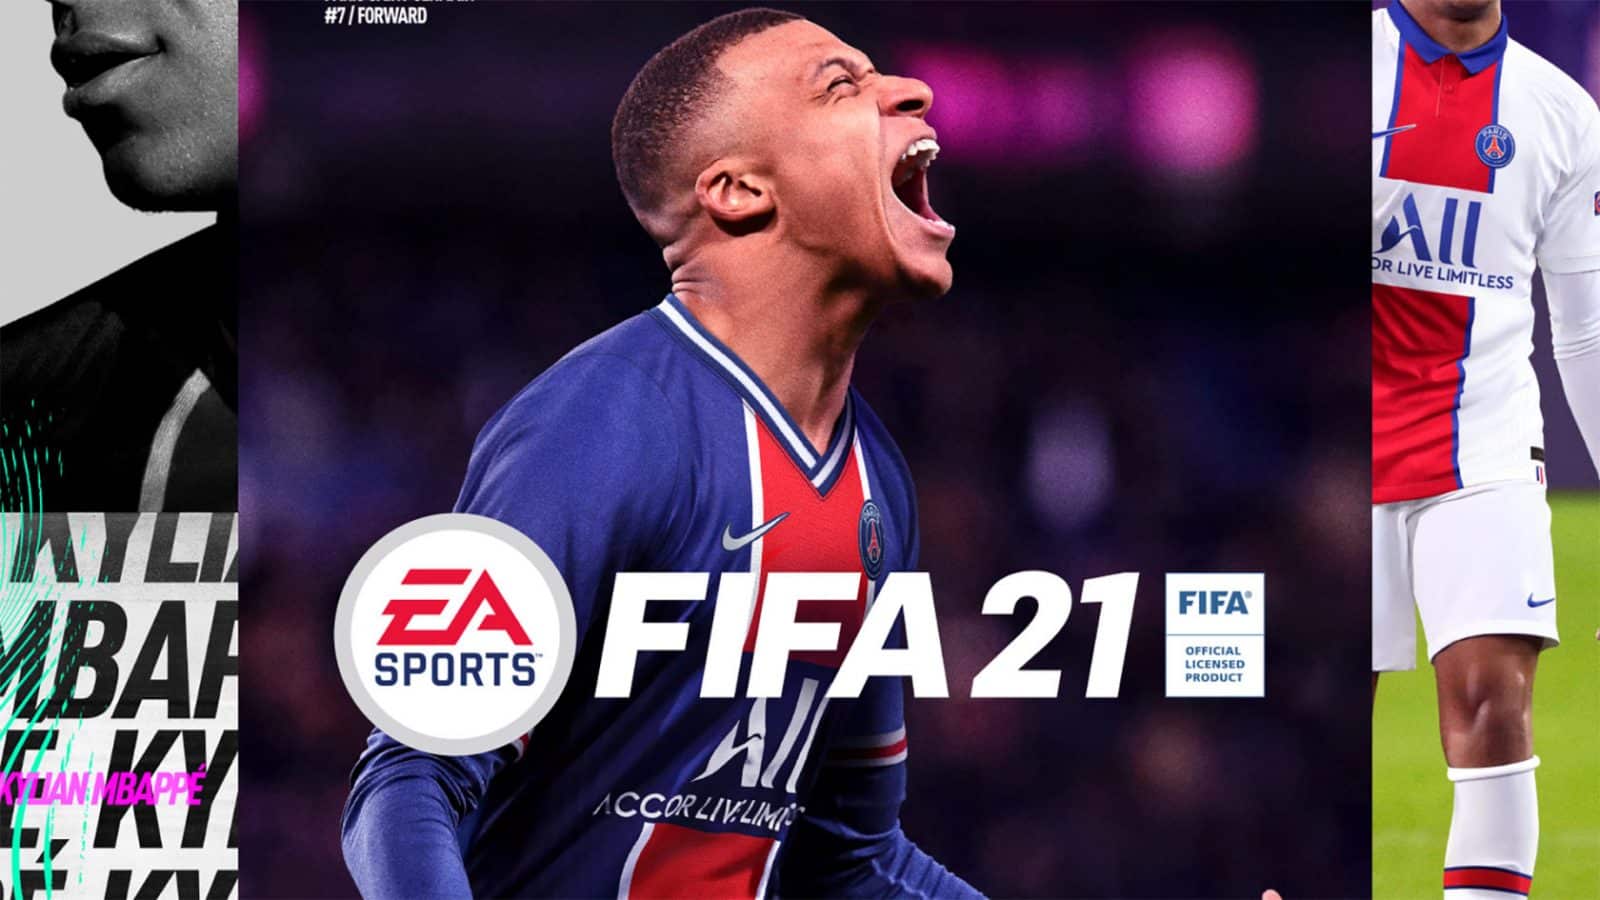 FIFA 21 Coverstar